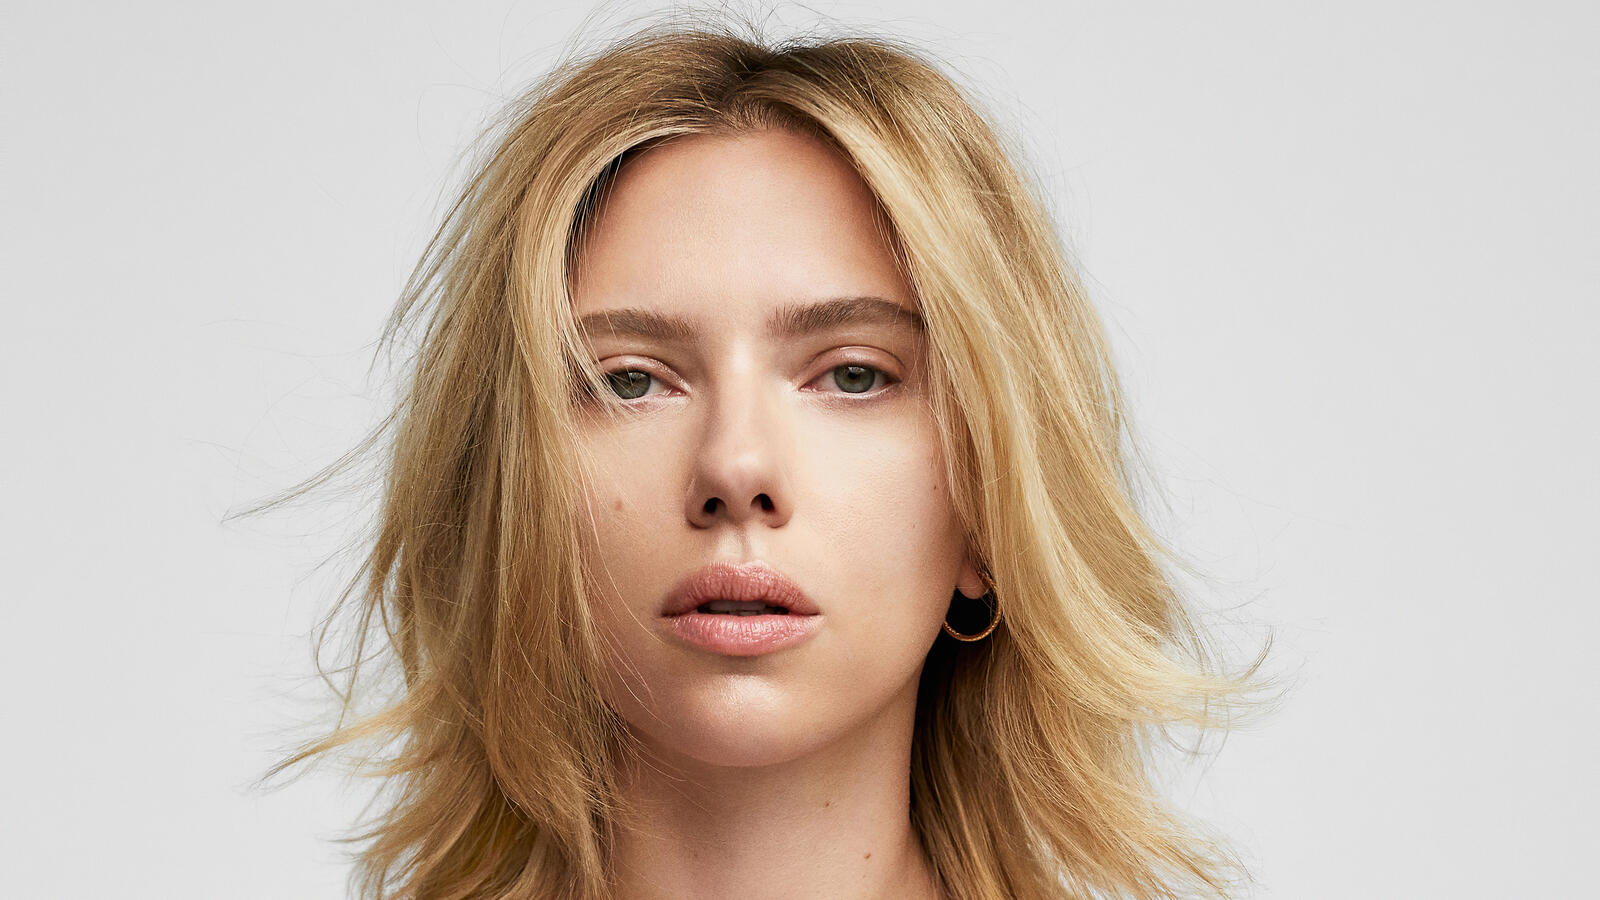 Wallpapers Scarlett Johansson girls blonde hair on the desktop